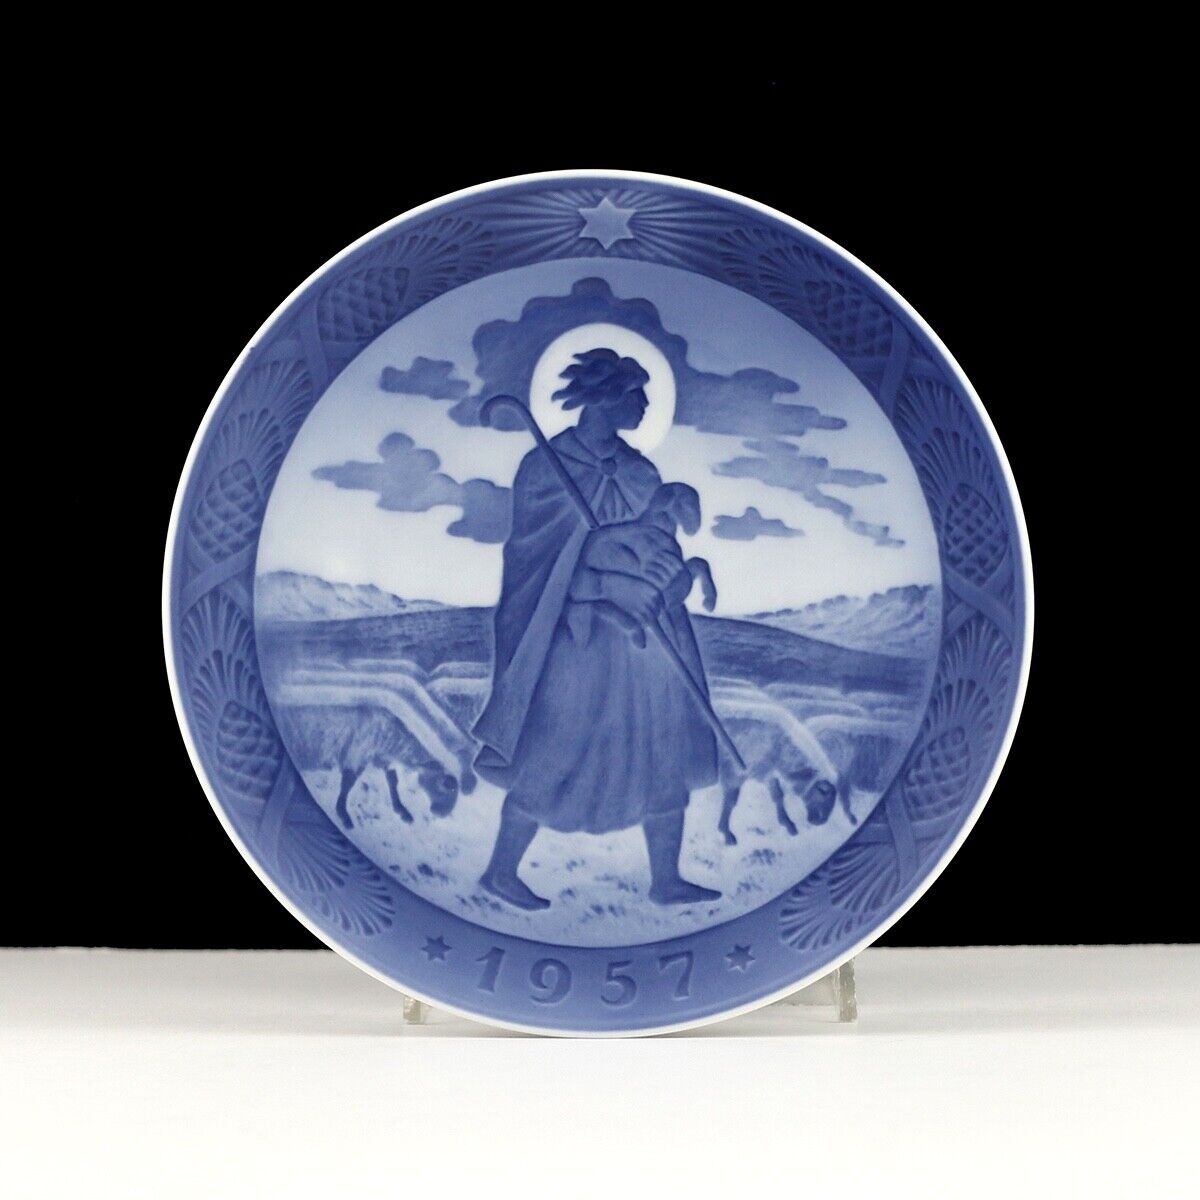 1957 Royal Copenhagen Porcelain Christmas Plate The Good Shepherd